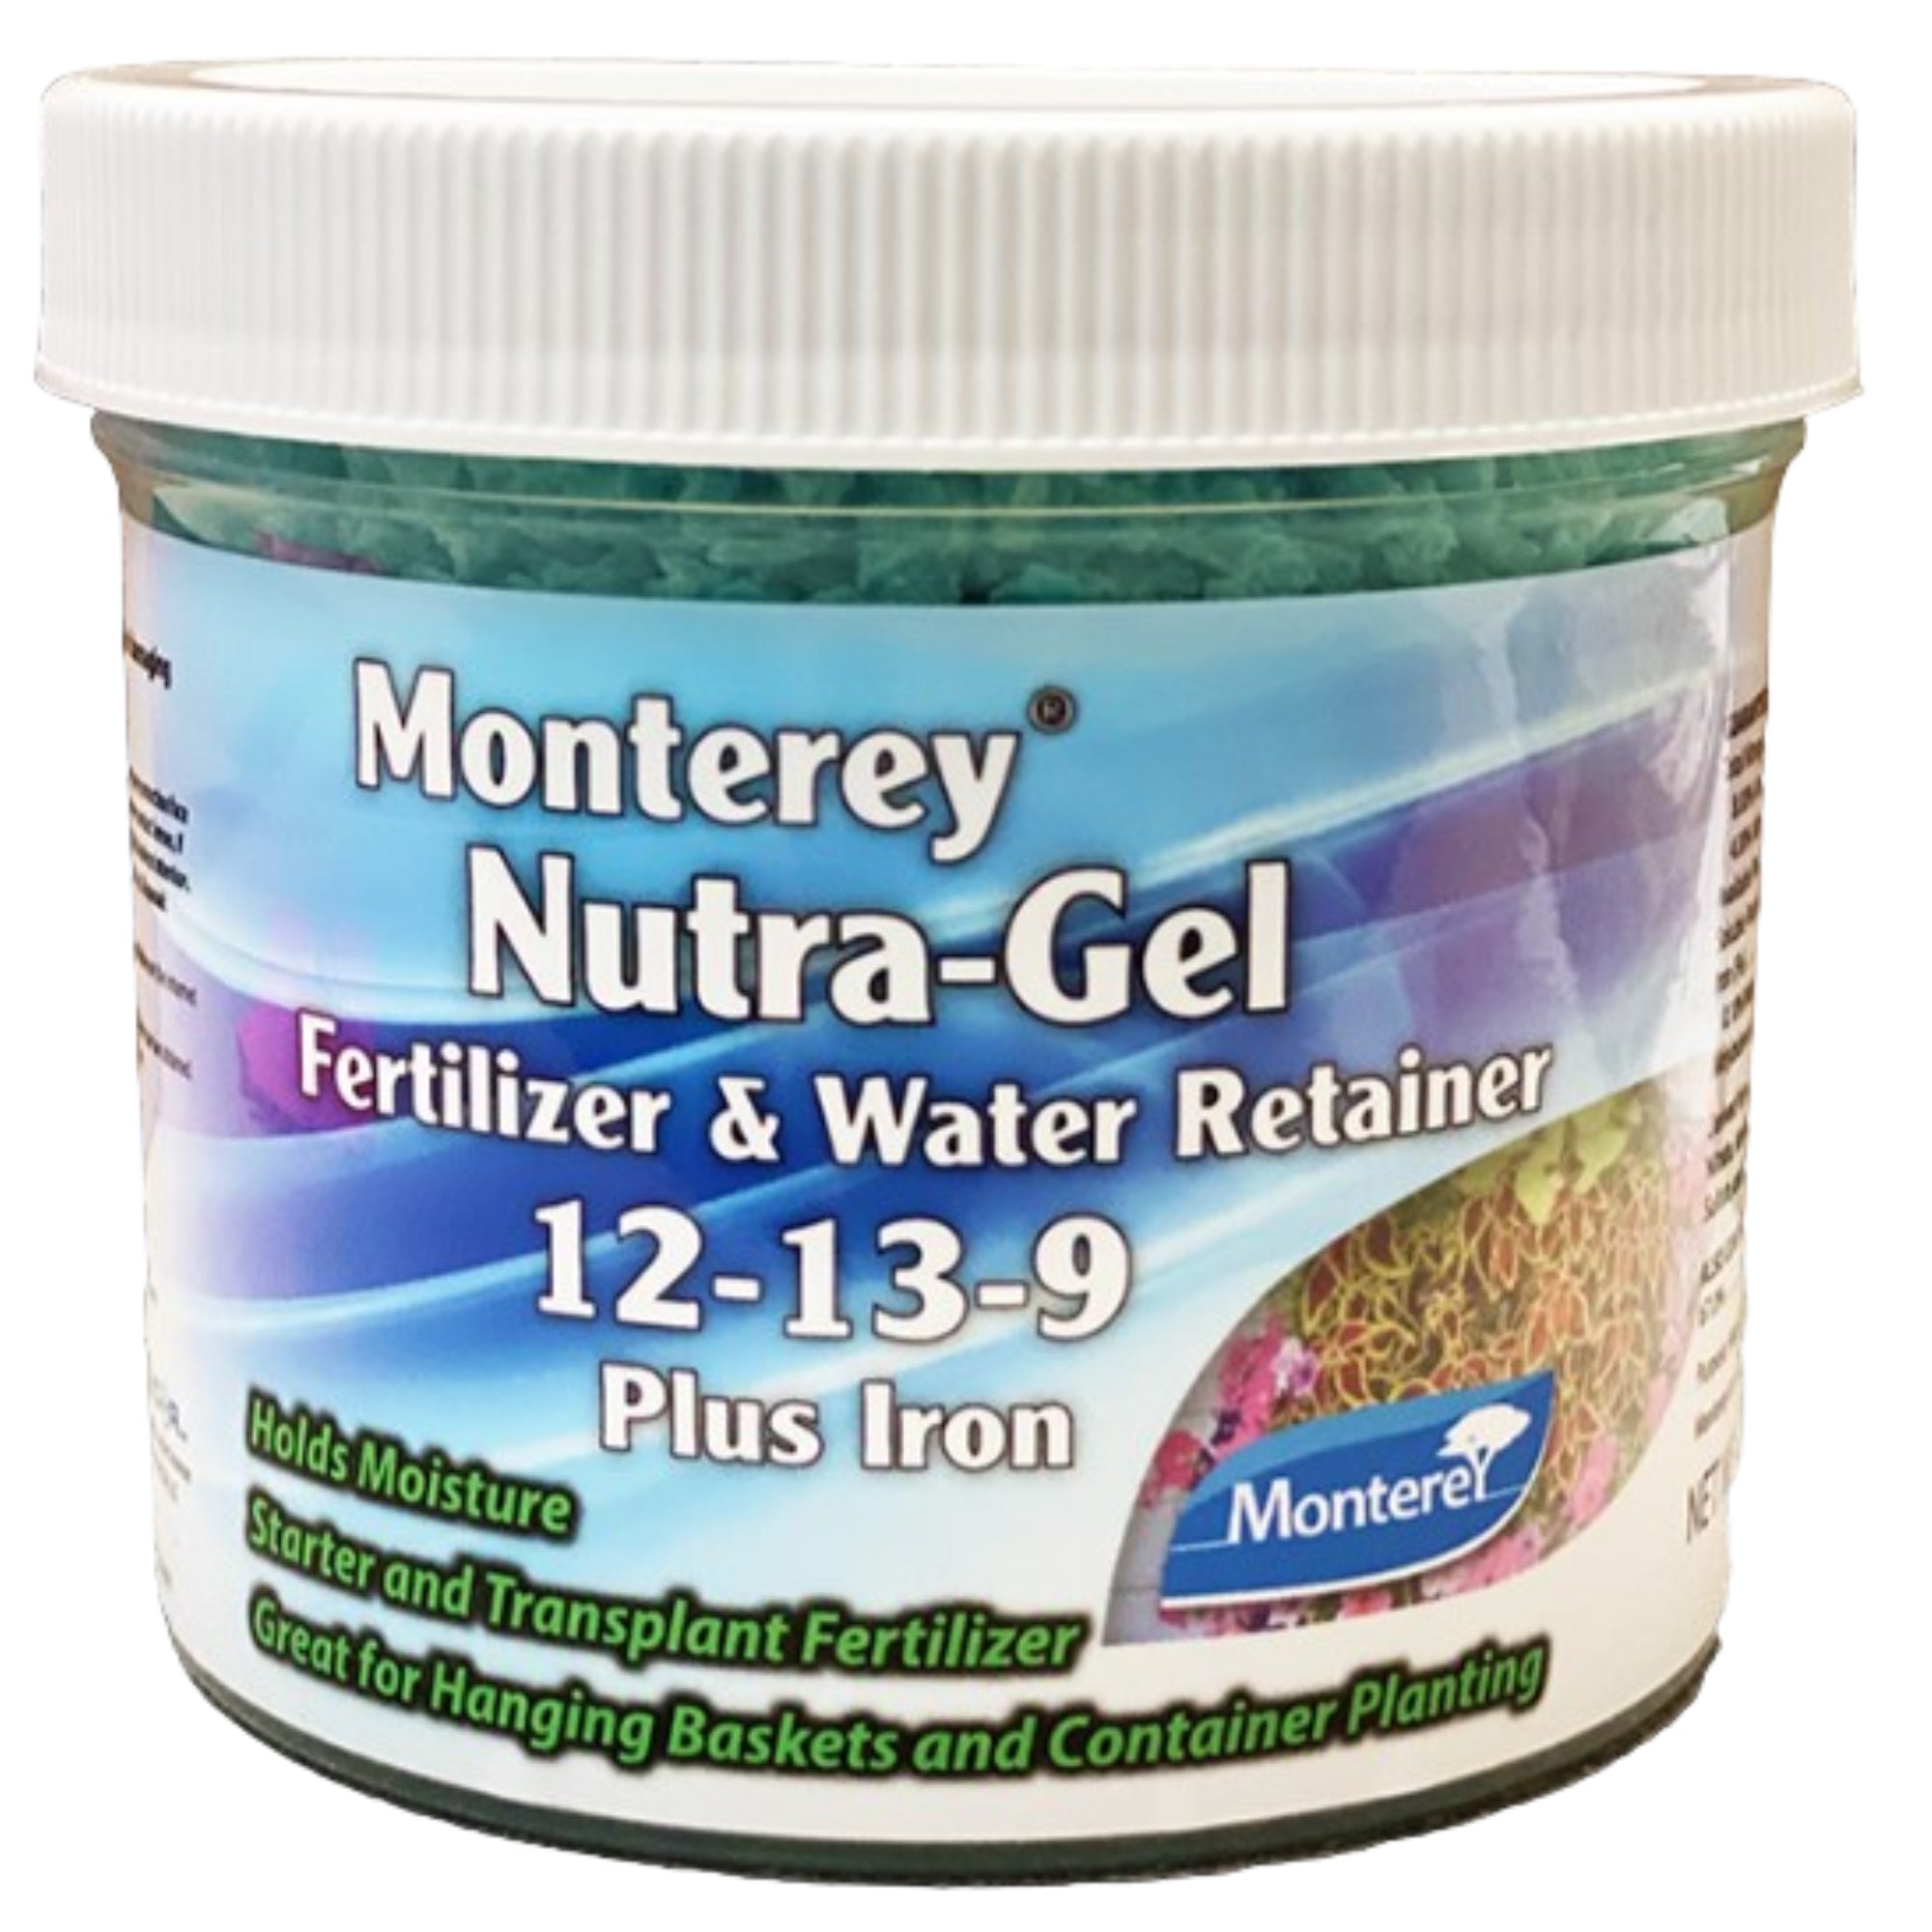 Monterey 12-13-9 Plus Iron Nutra-Gel Fertilizer and Water Retainer, 8 oz